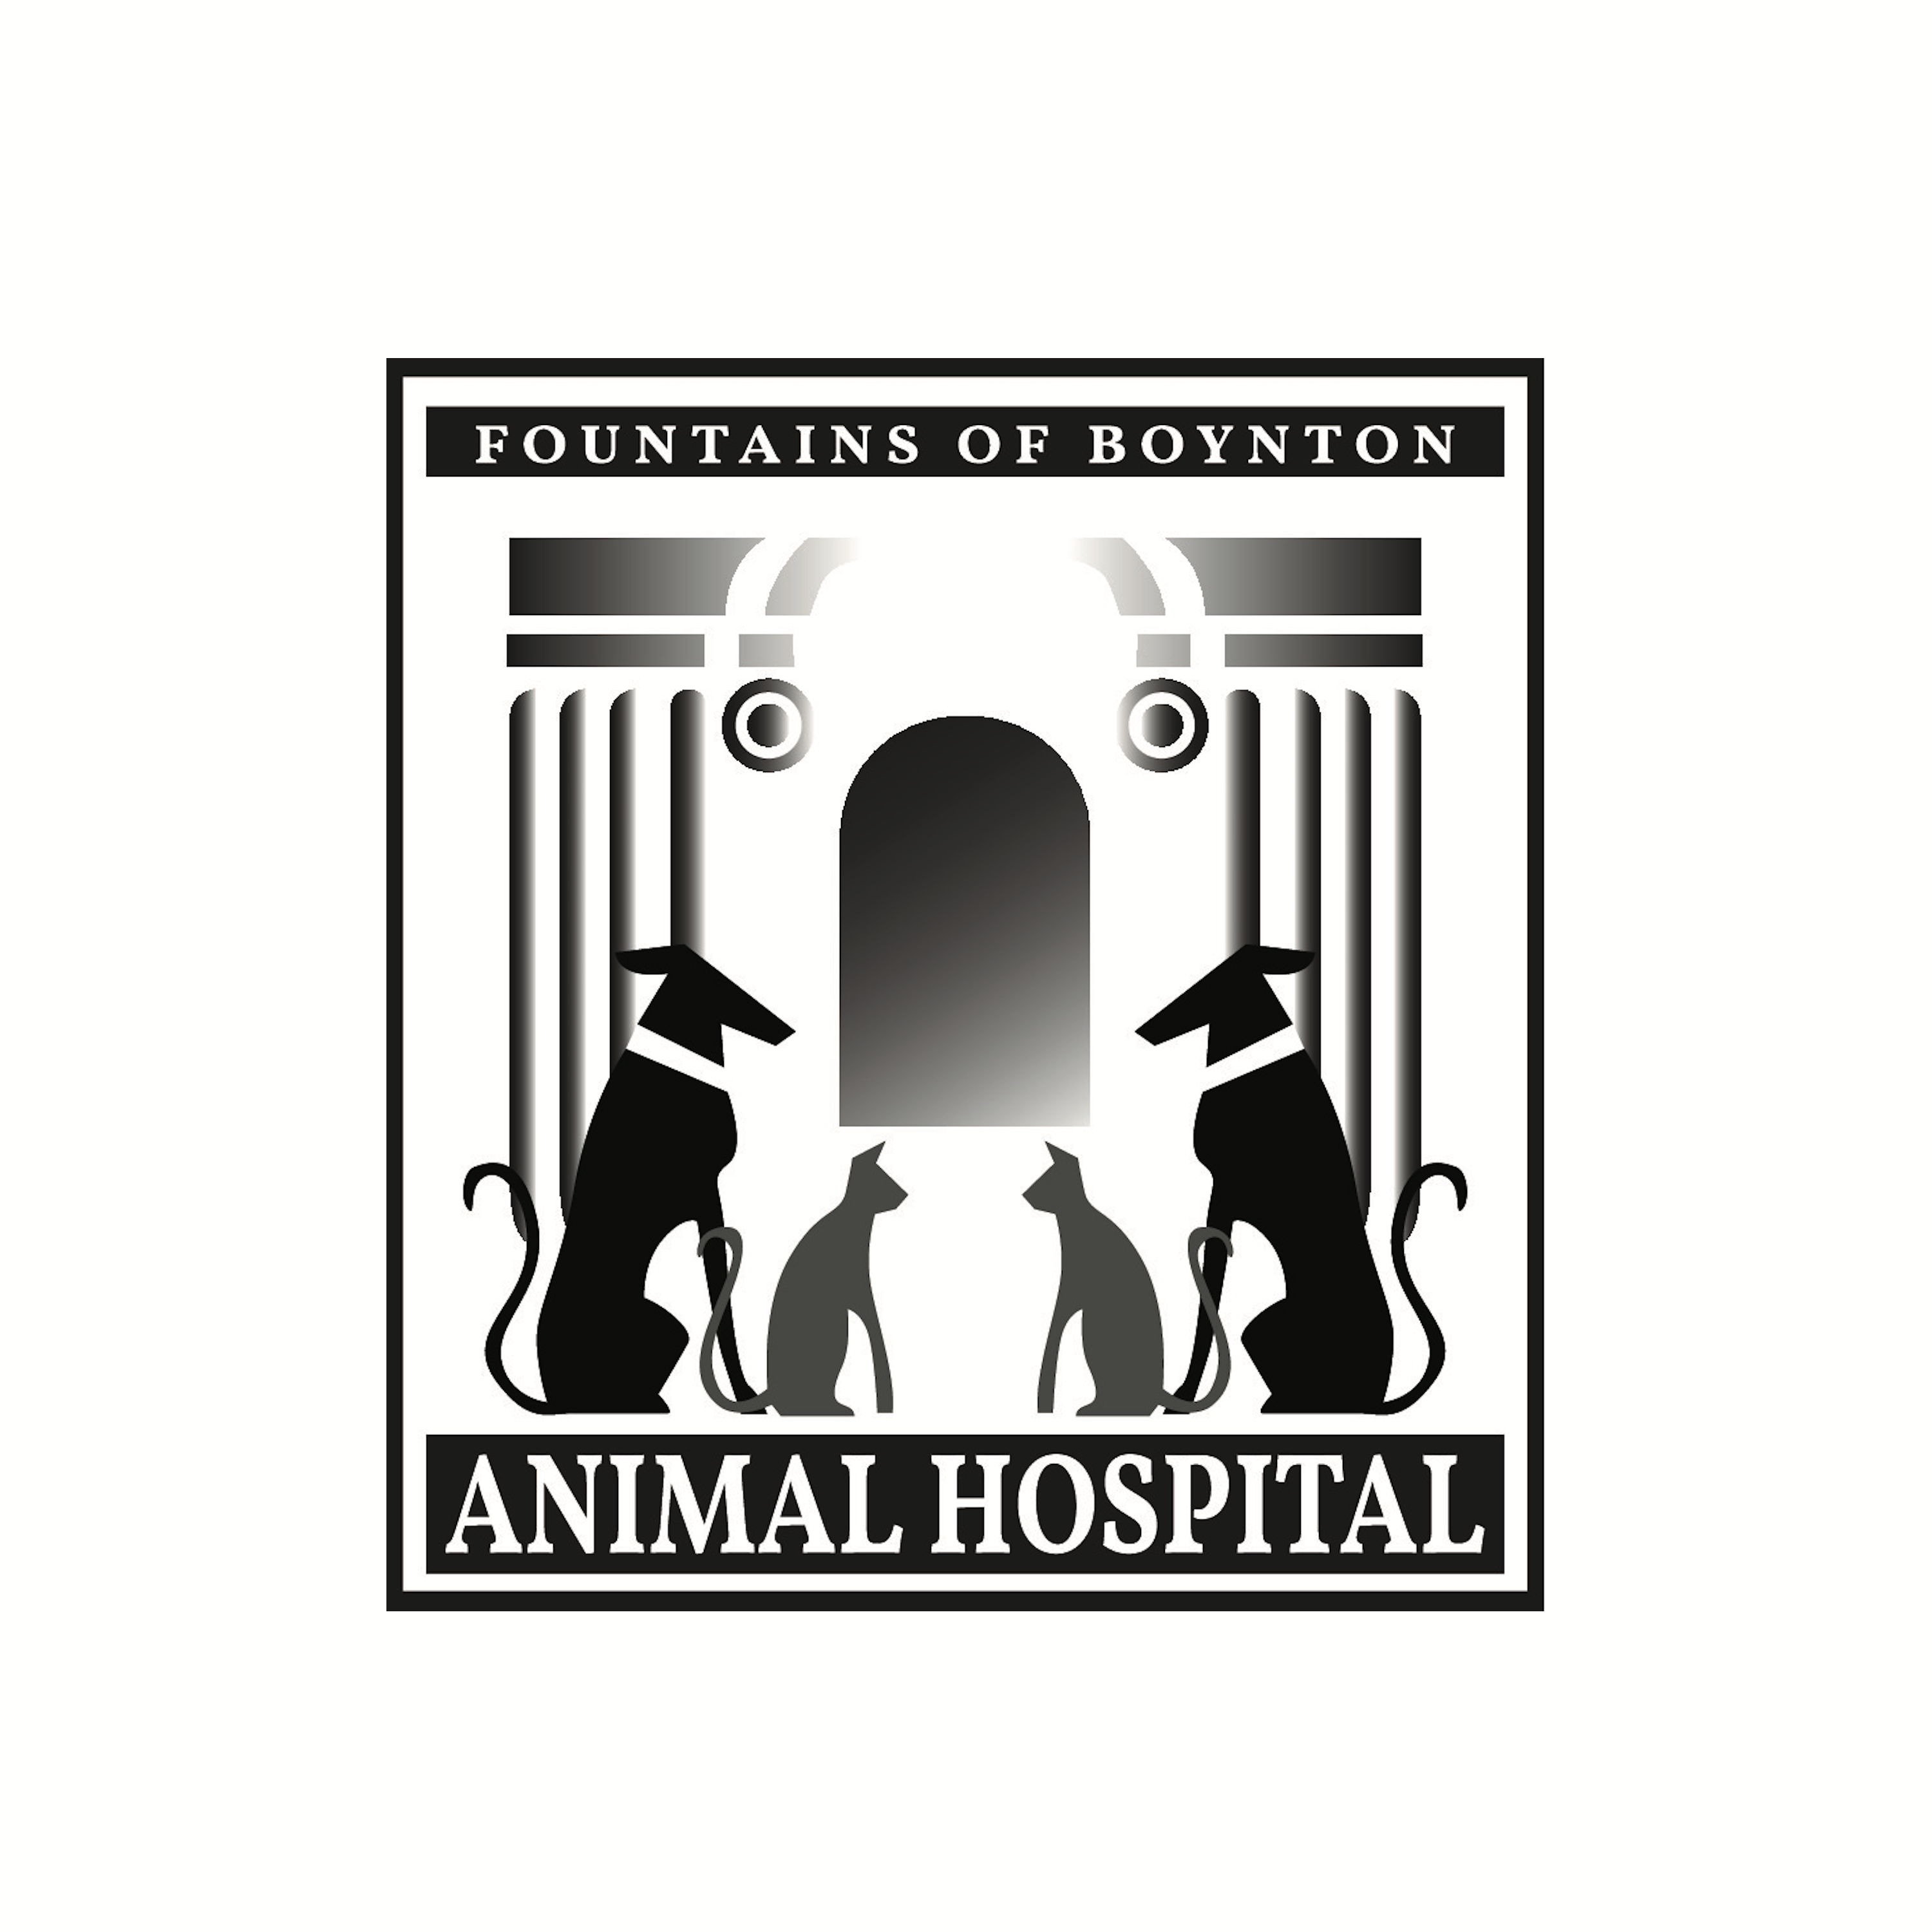 Fountains of Boynton Animal Hospital